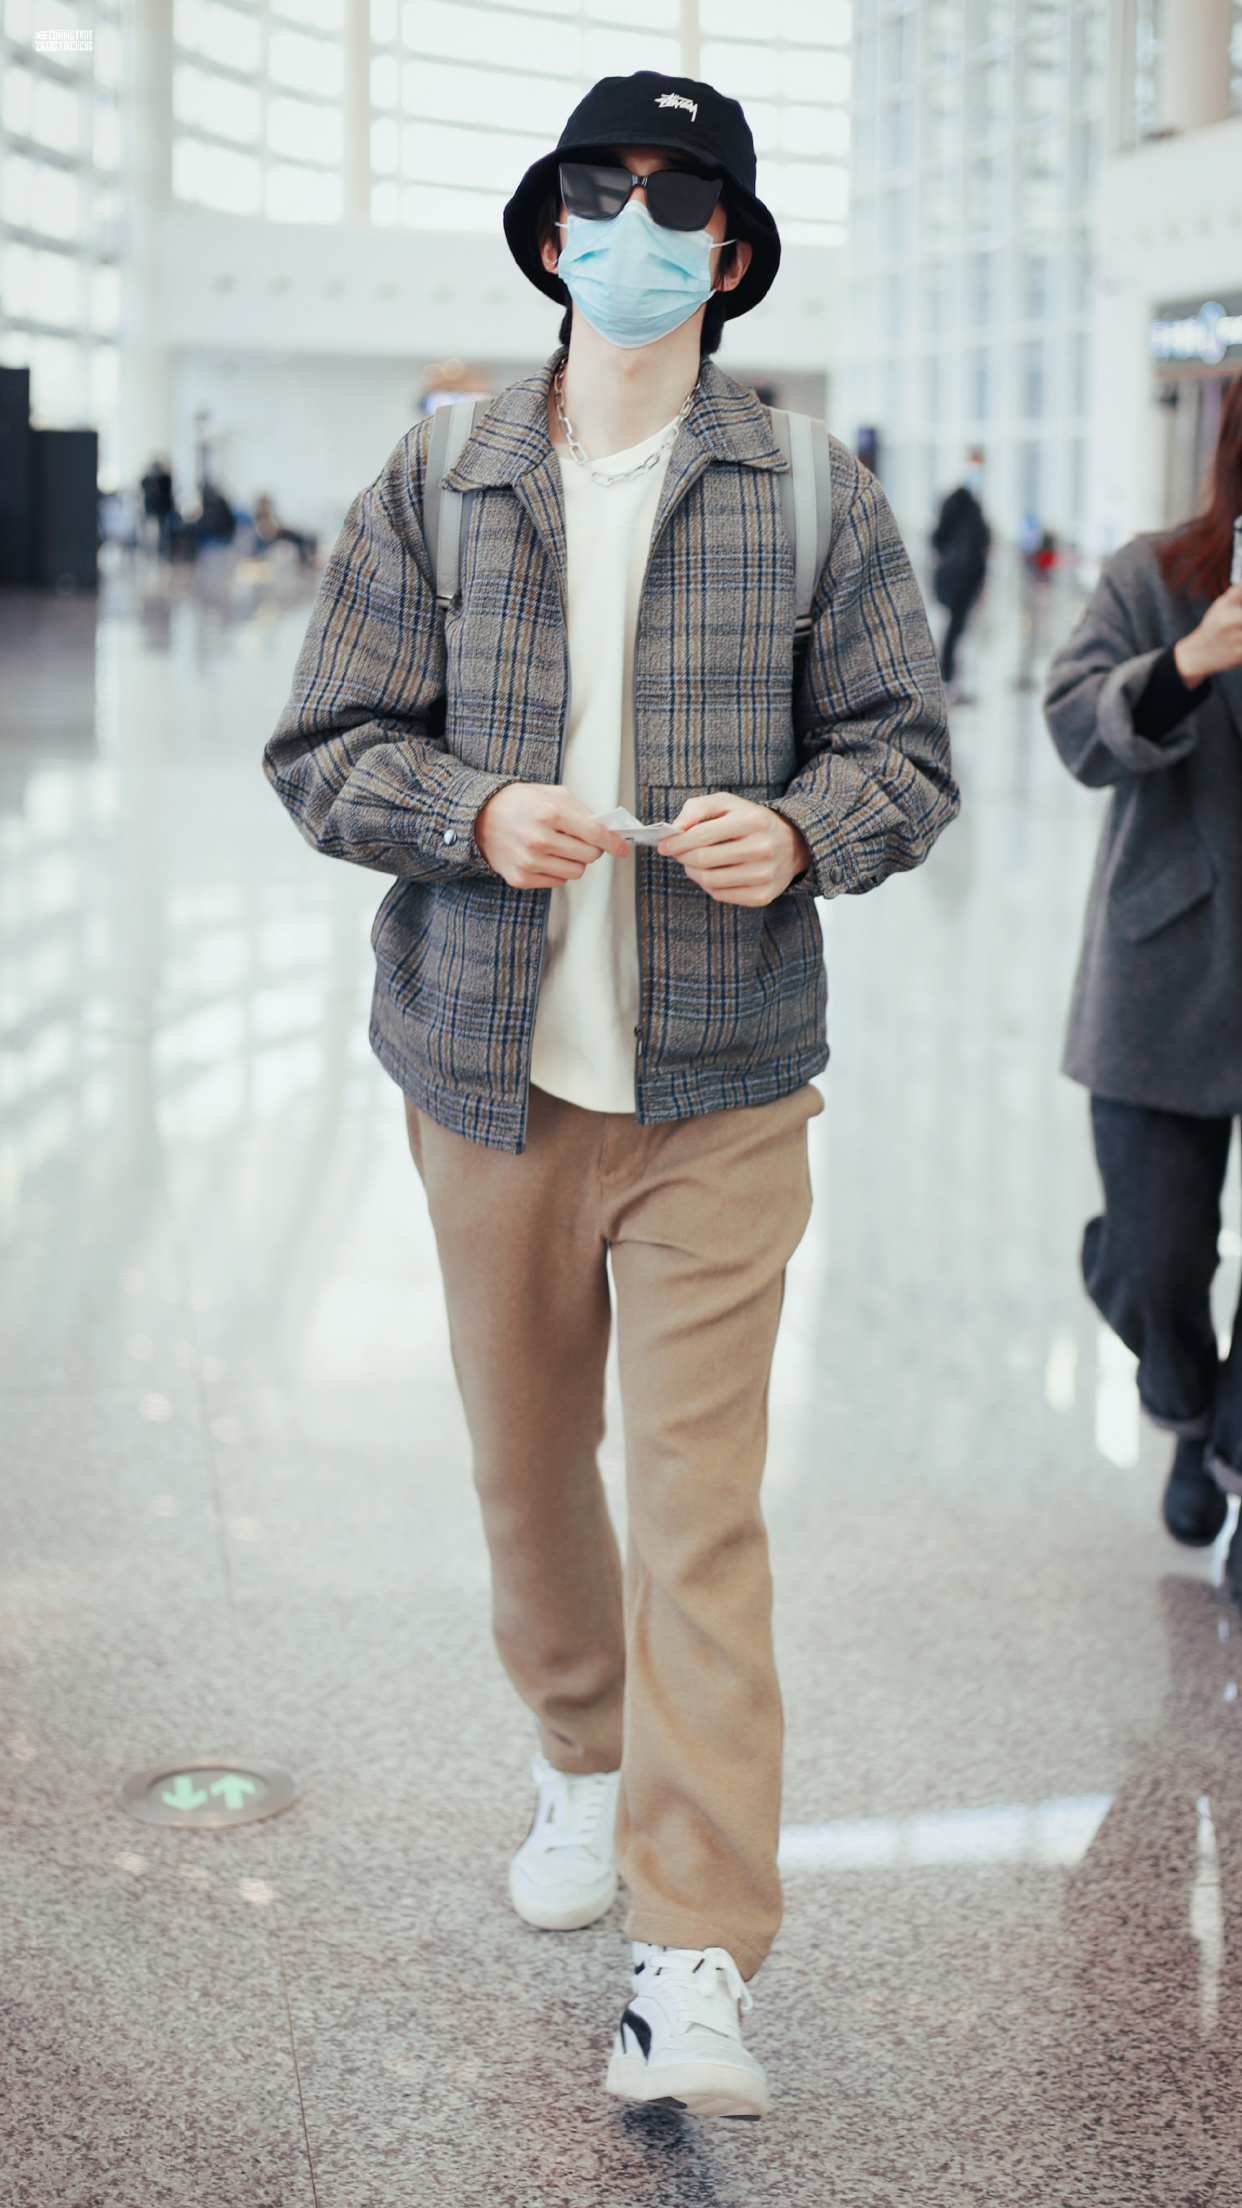 张新成机场造型,格纹夹克搭配棕色休闲裤,清爽干净